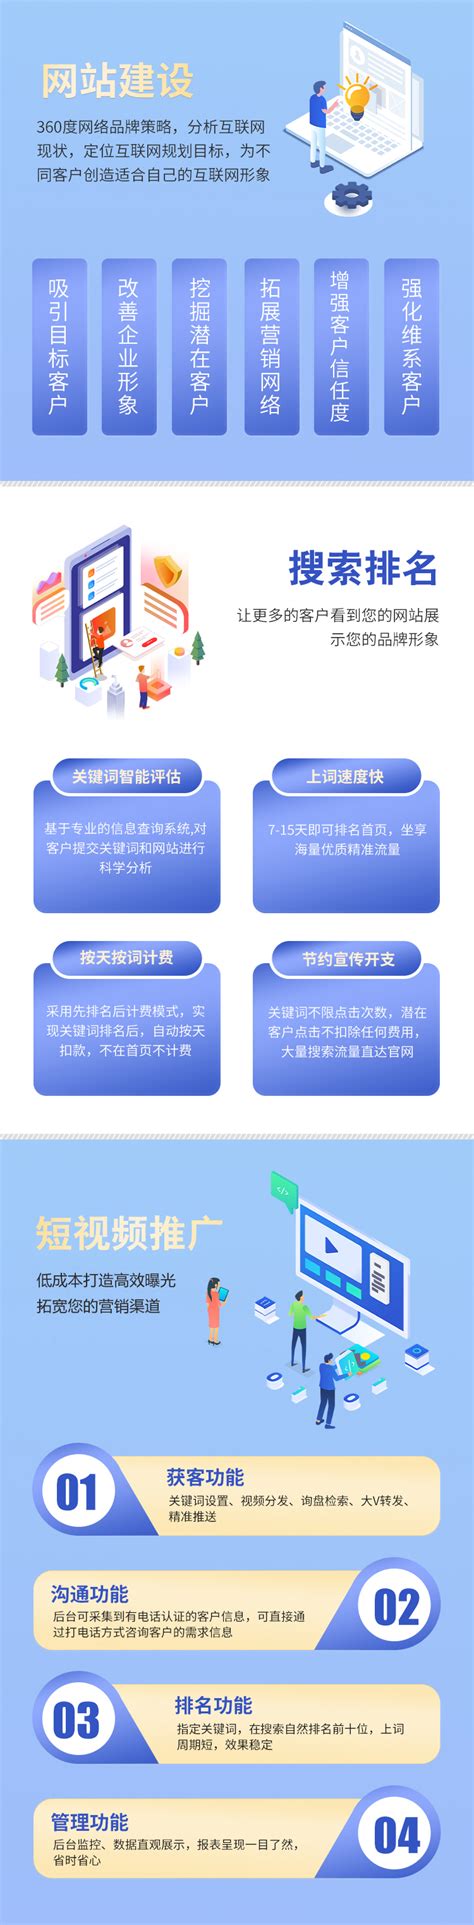 浙江网站建设与推广公司